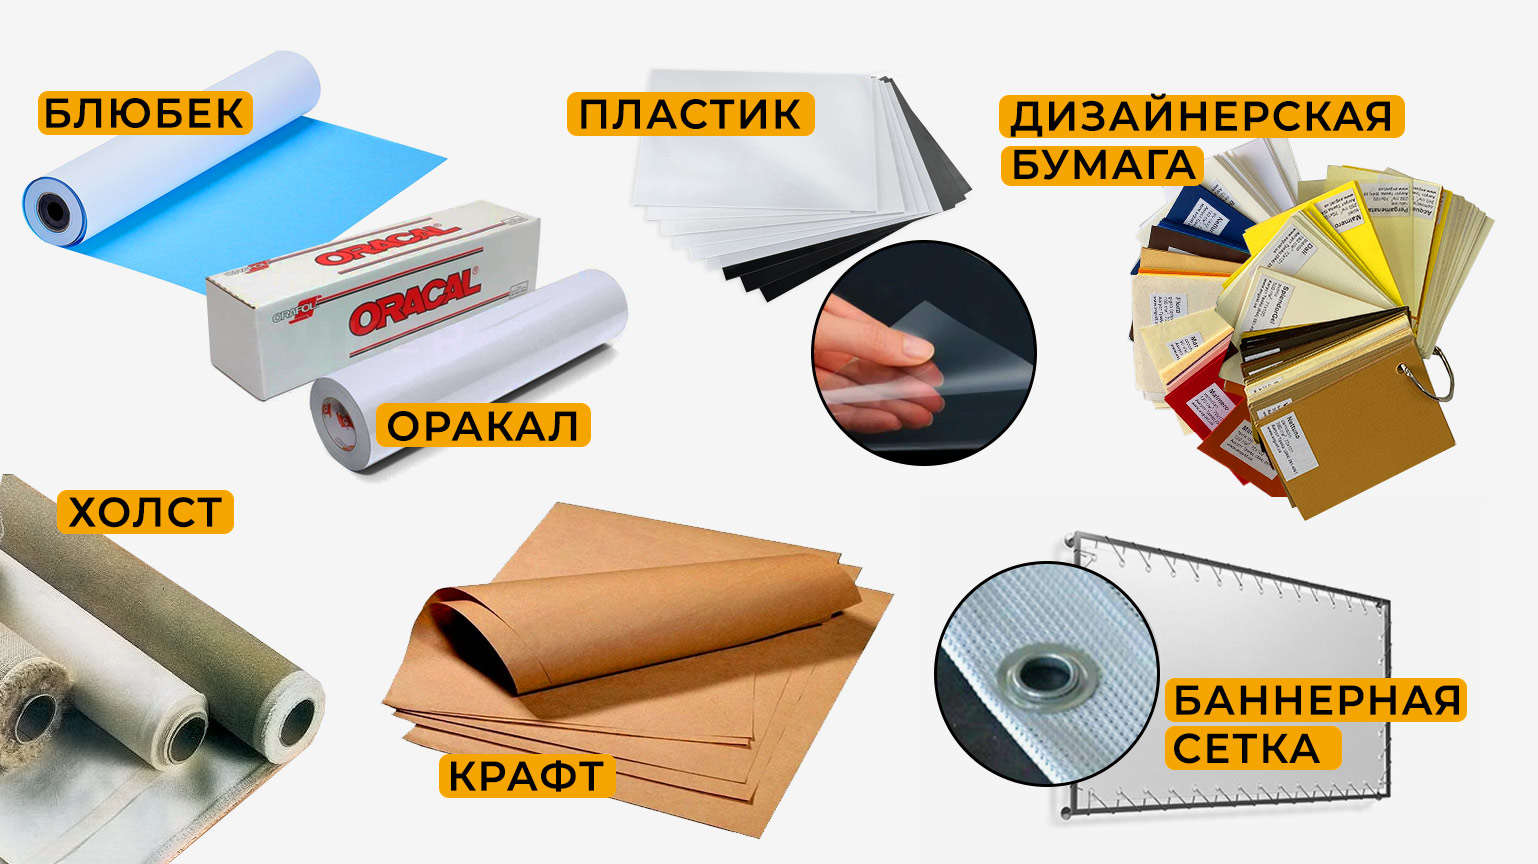 Помощь персонального менеджера в выборе материалов для печати, дизайн, доставка. Типография КОМАНДА-А, Киев